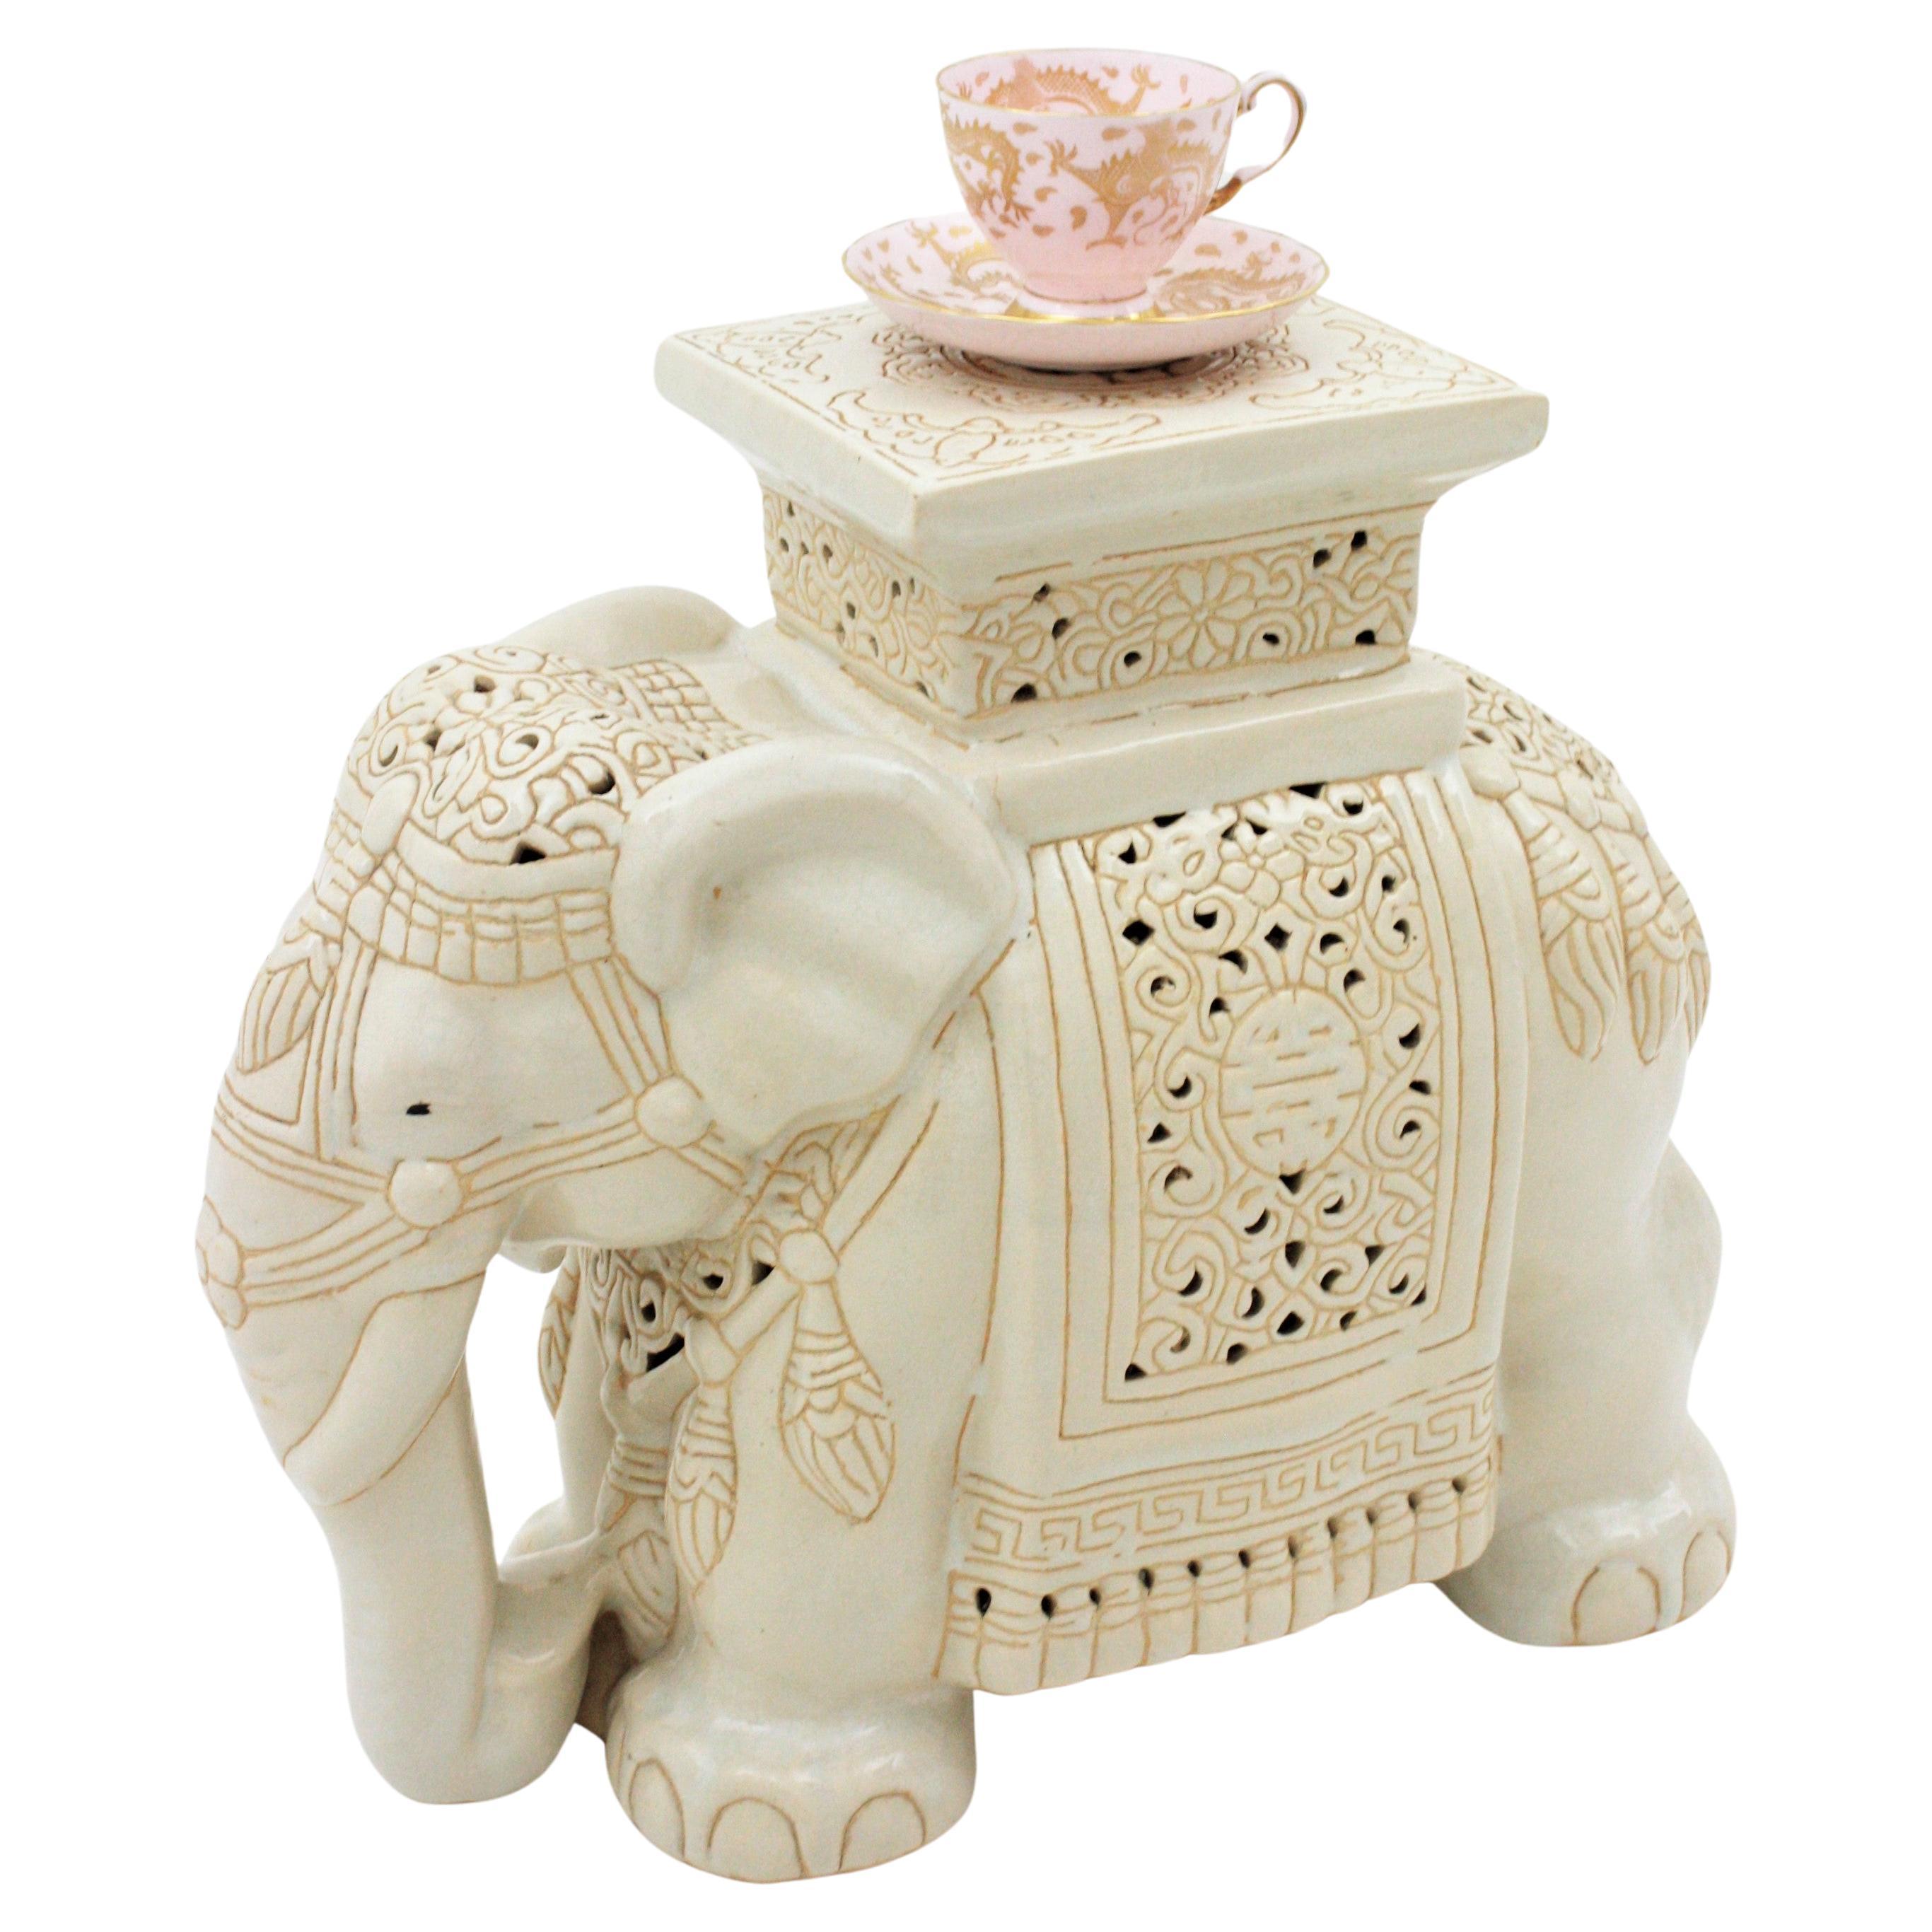 Spanischer Beistelltisch oder Getränketisch mit Elefanten aus glasierter Keramik